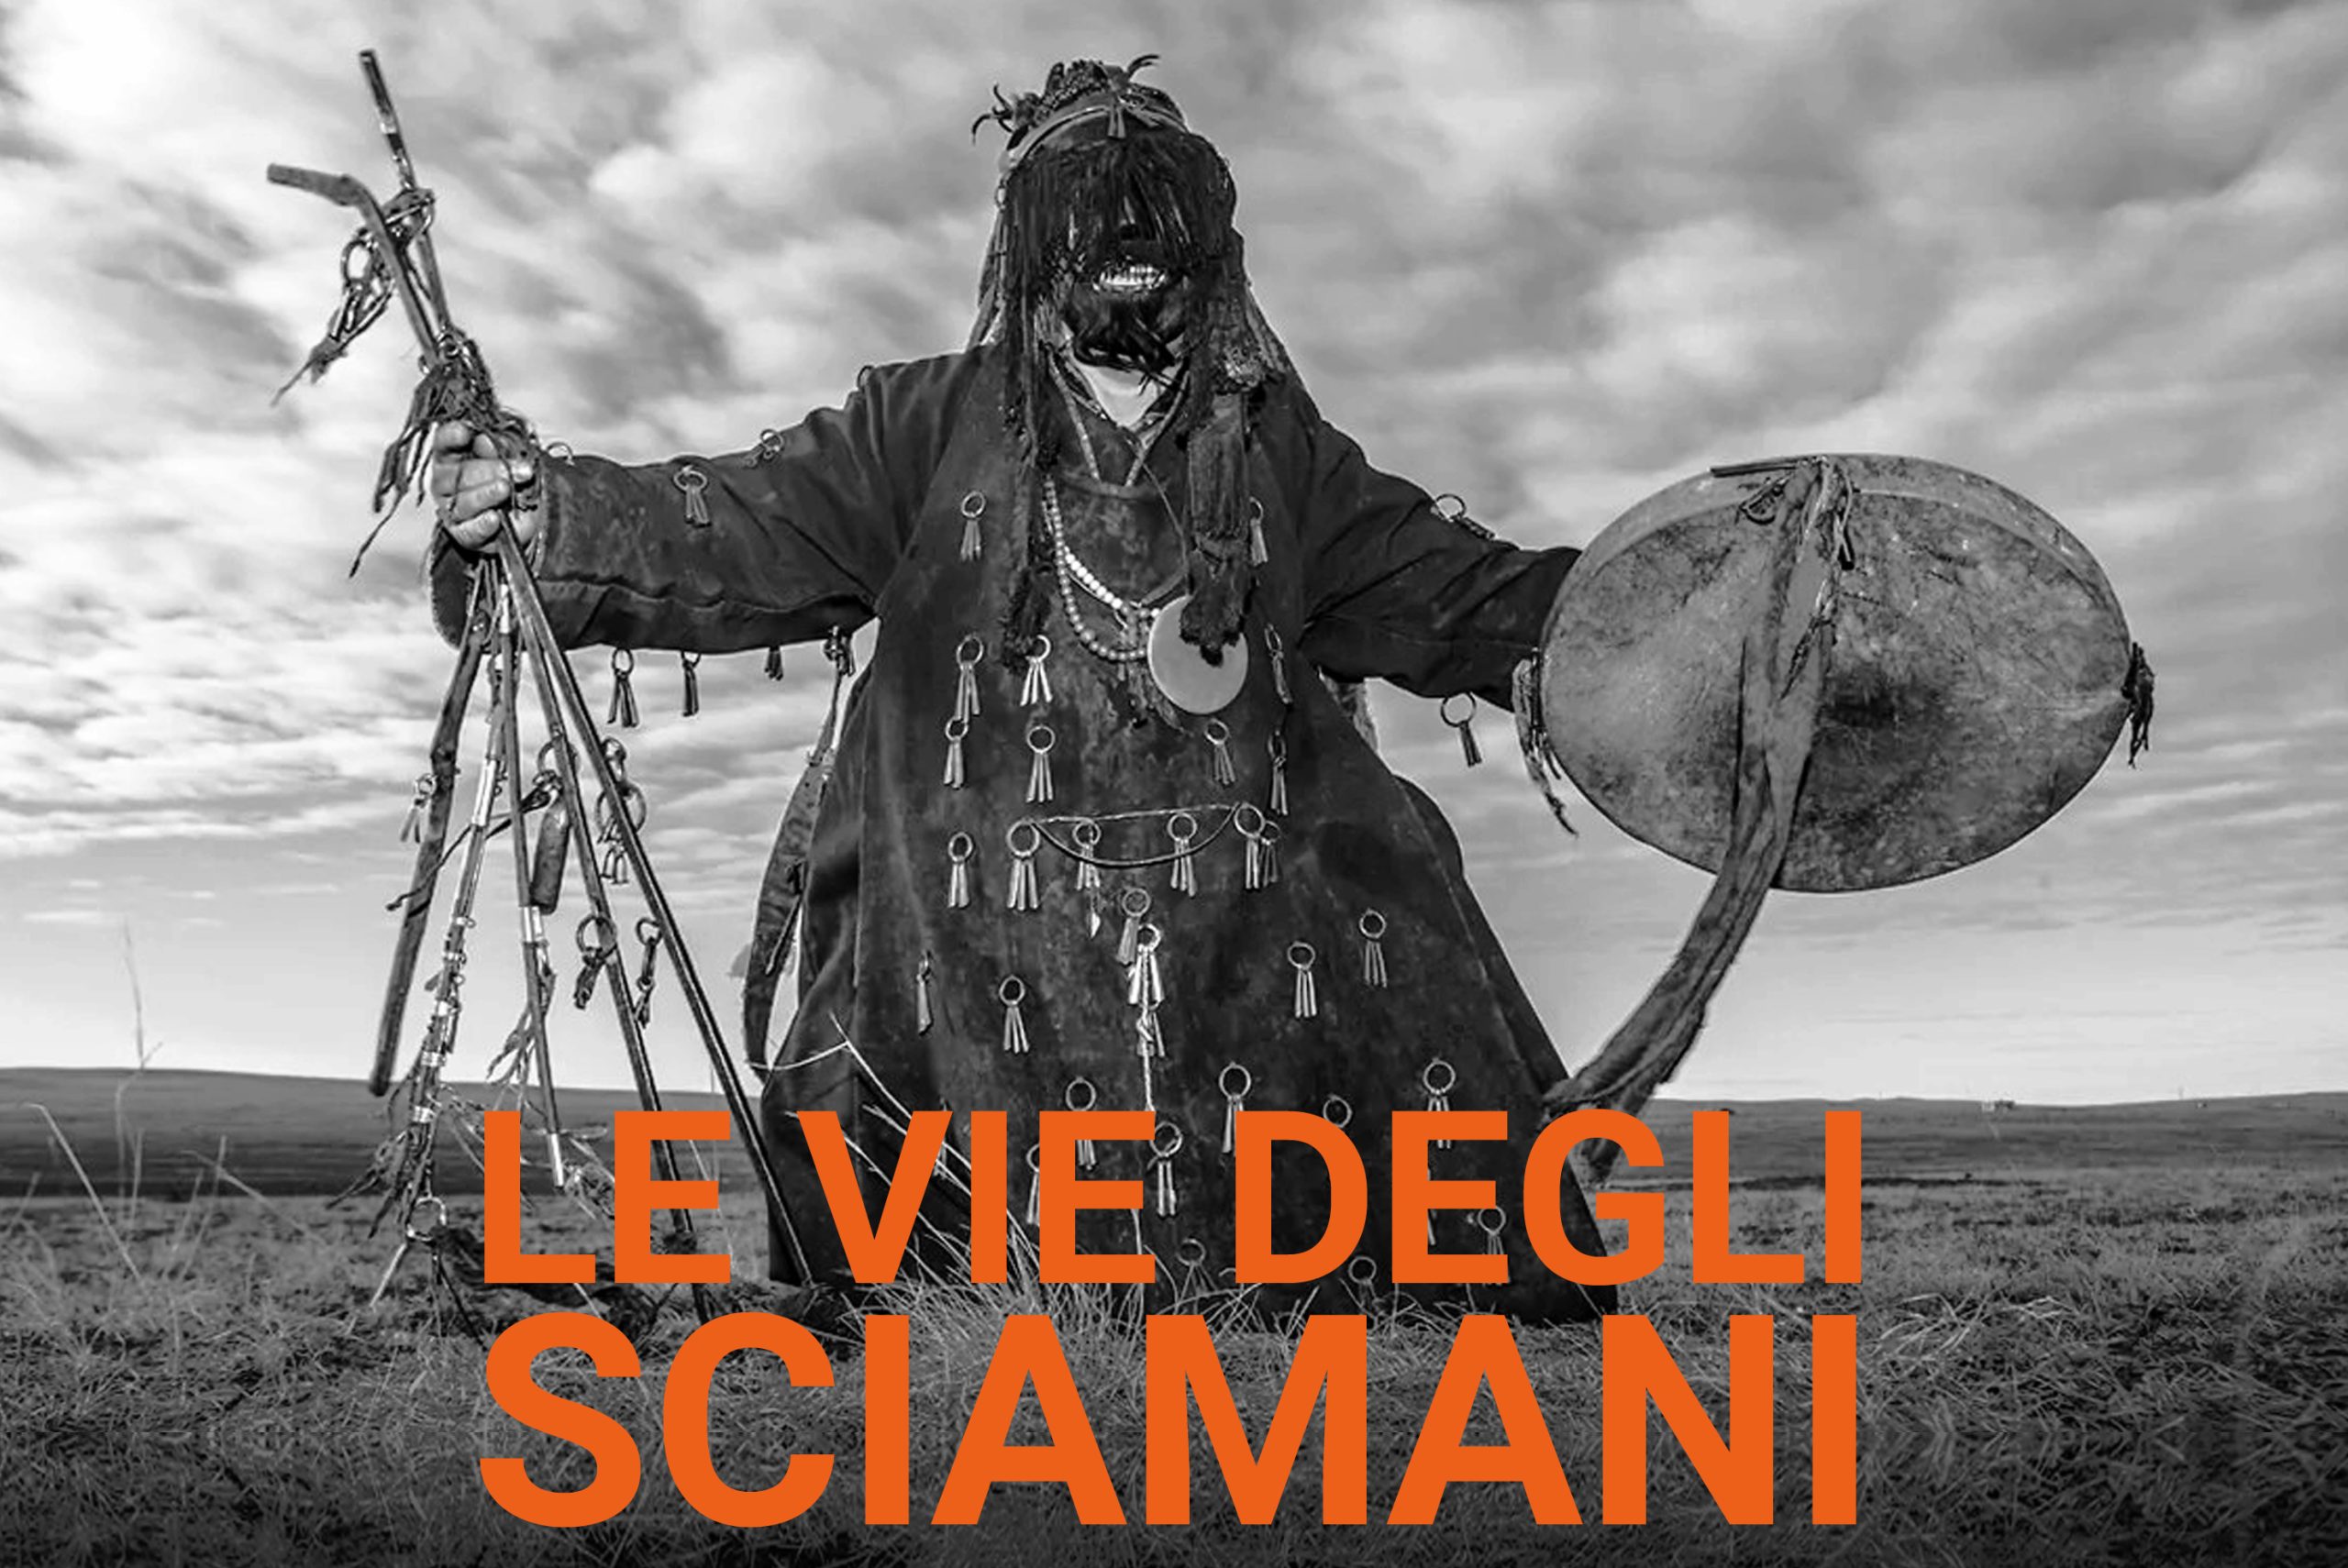 www.novantatrepercento.it n.41 "le vie degli sciamani", in foto: sciamano siberiano